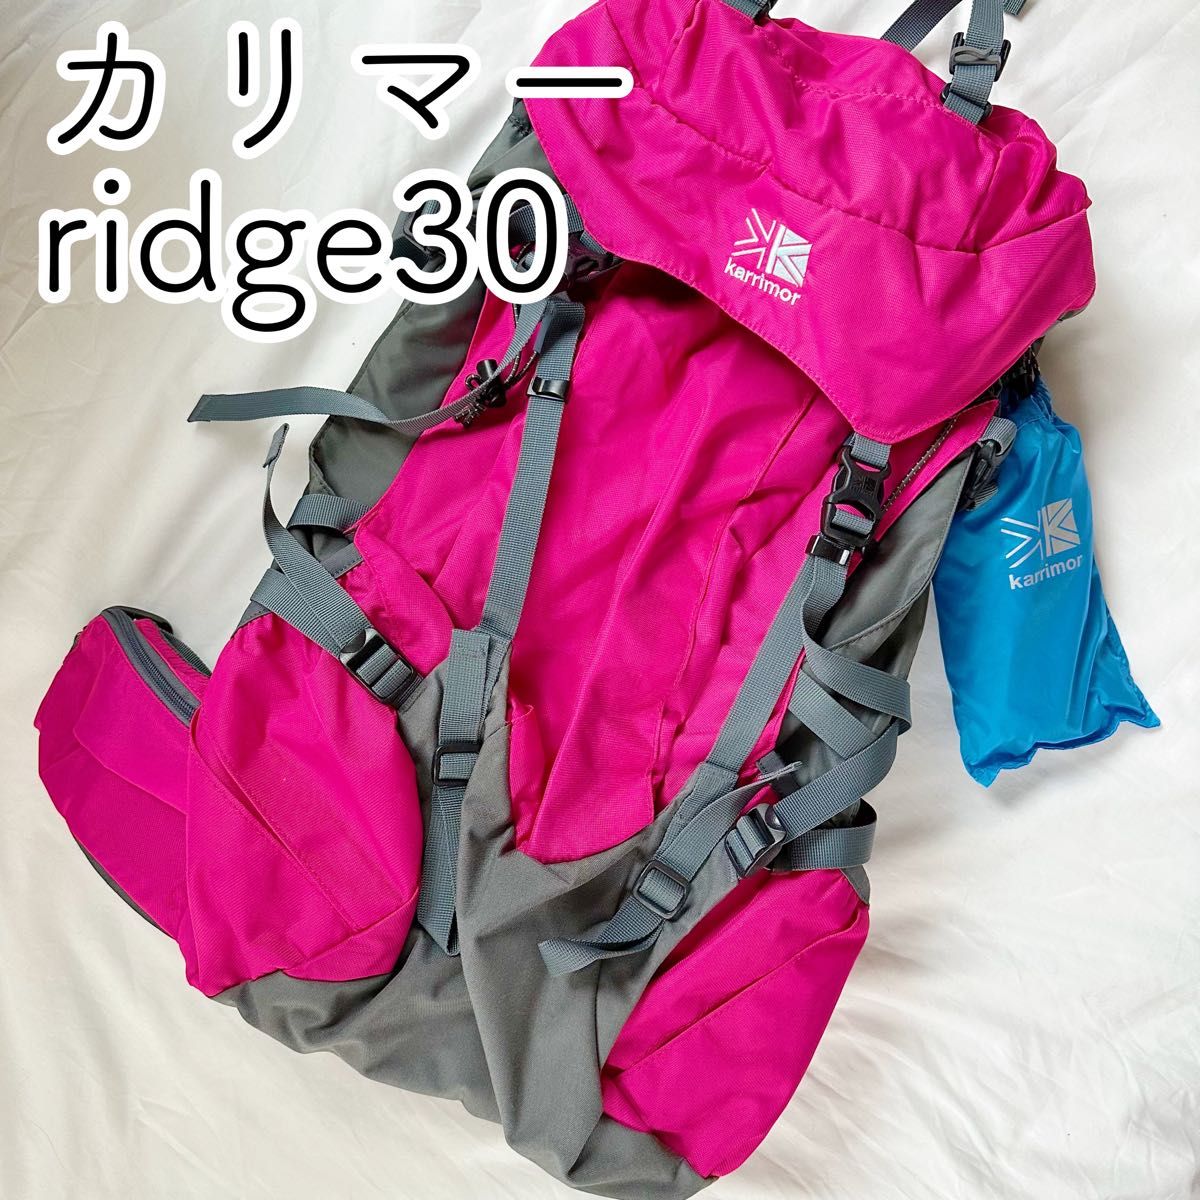 アウトドア 登山用品 2021新作モデル karrimor カリマー ridge 30 グリーン ienomat.com.br